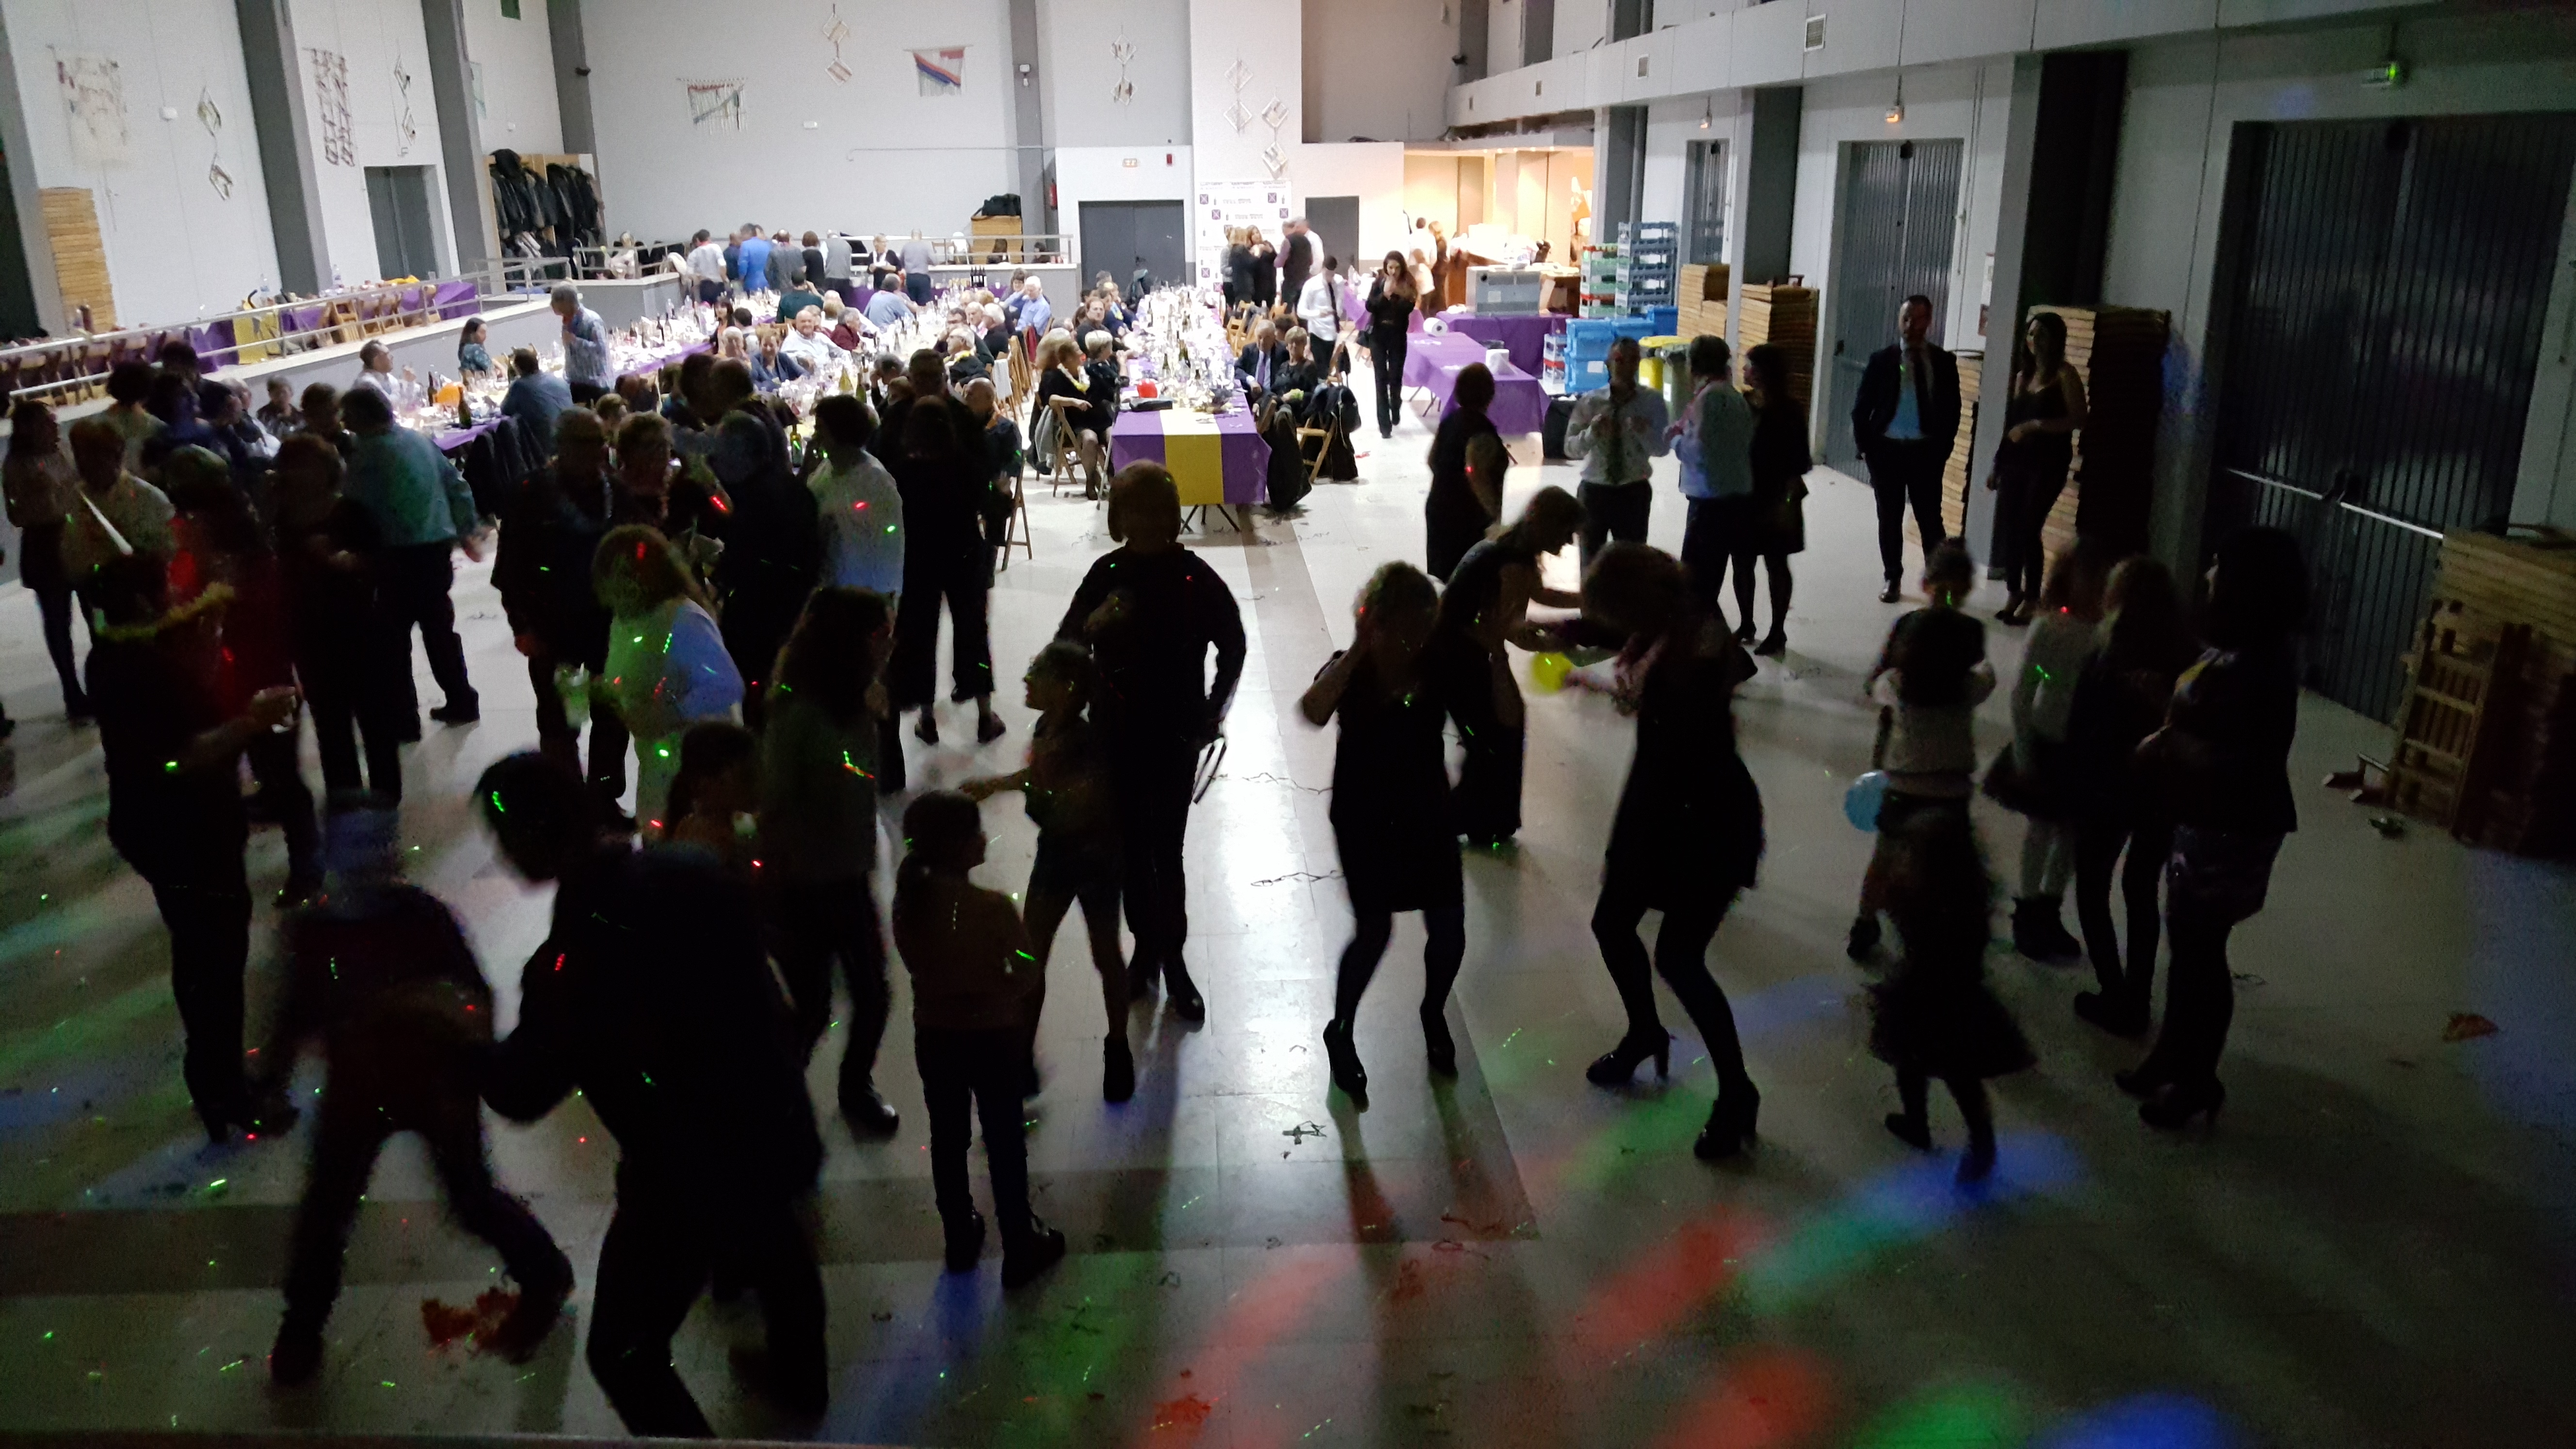 La revetlla de Cap d'Any va reunir 170 persones a la Sala de l'Ateneu, que van gaudir de la festa fins a la matinada.